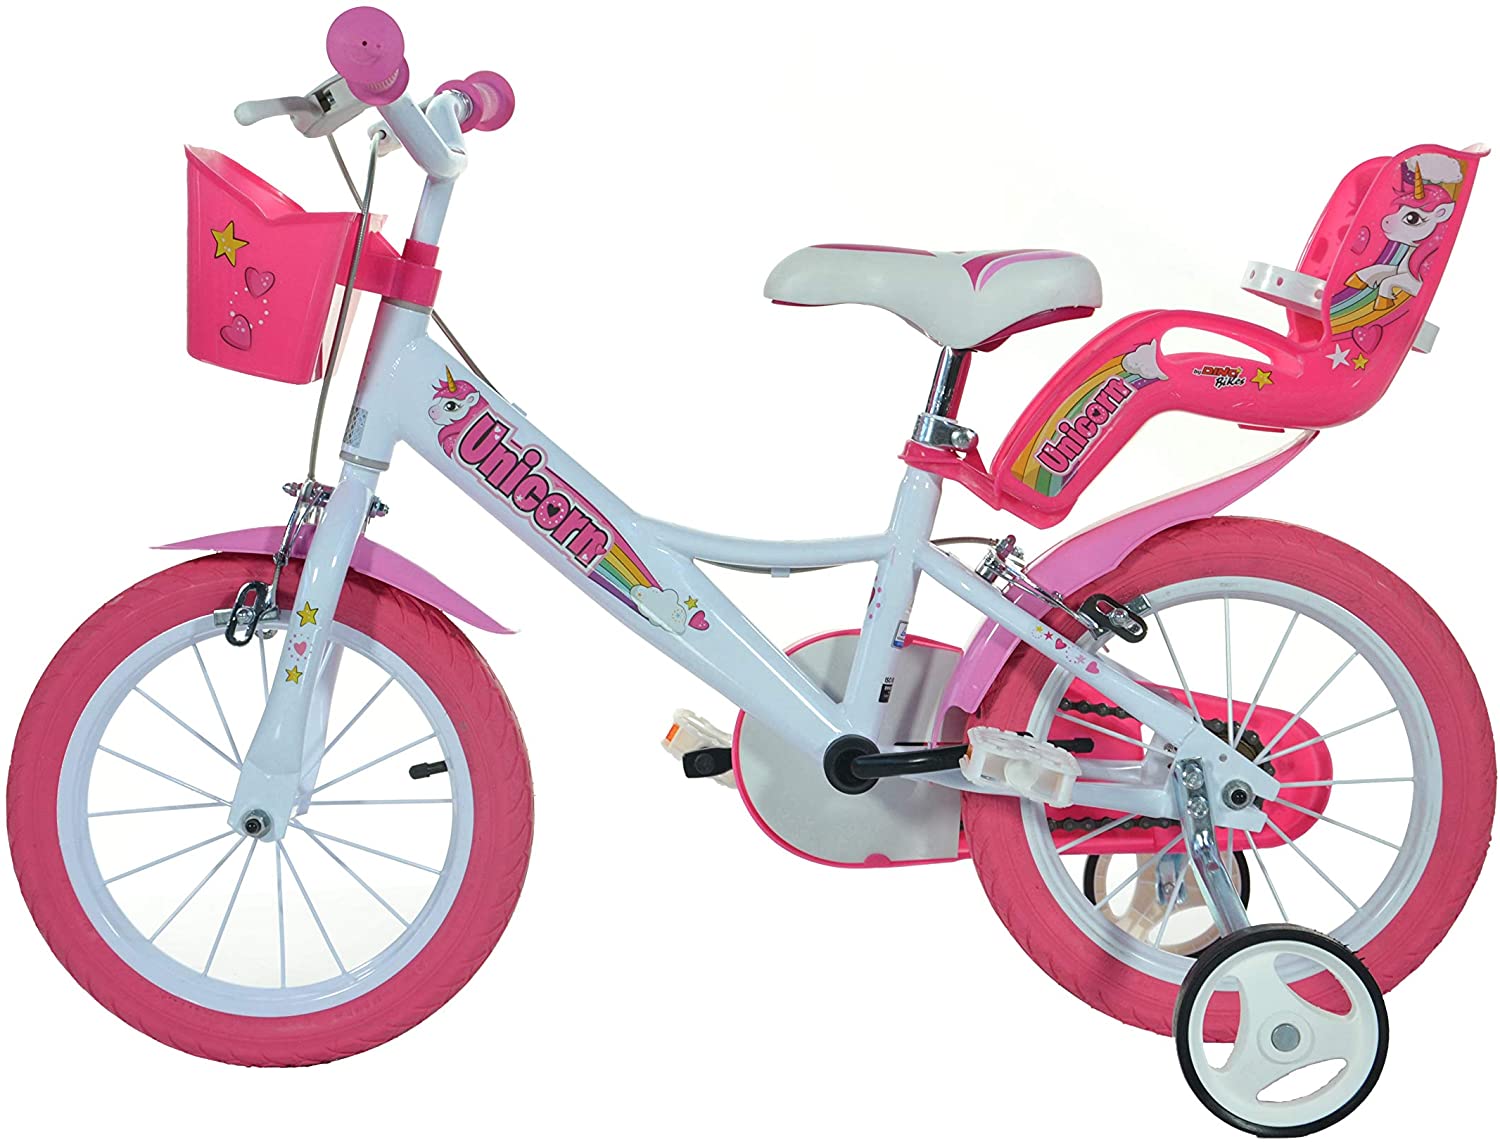 Bici bambina unicorn 14" - colori arcobaleno, telaio in acciaio, freni anteriori e posteriori, cestino, portabambola per bambine dai 5 ai 7 anni - 